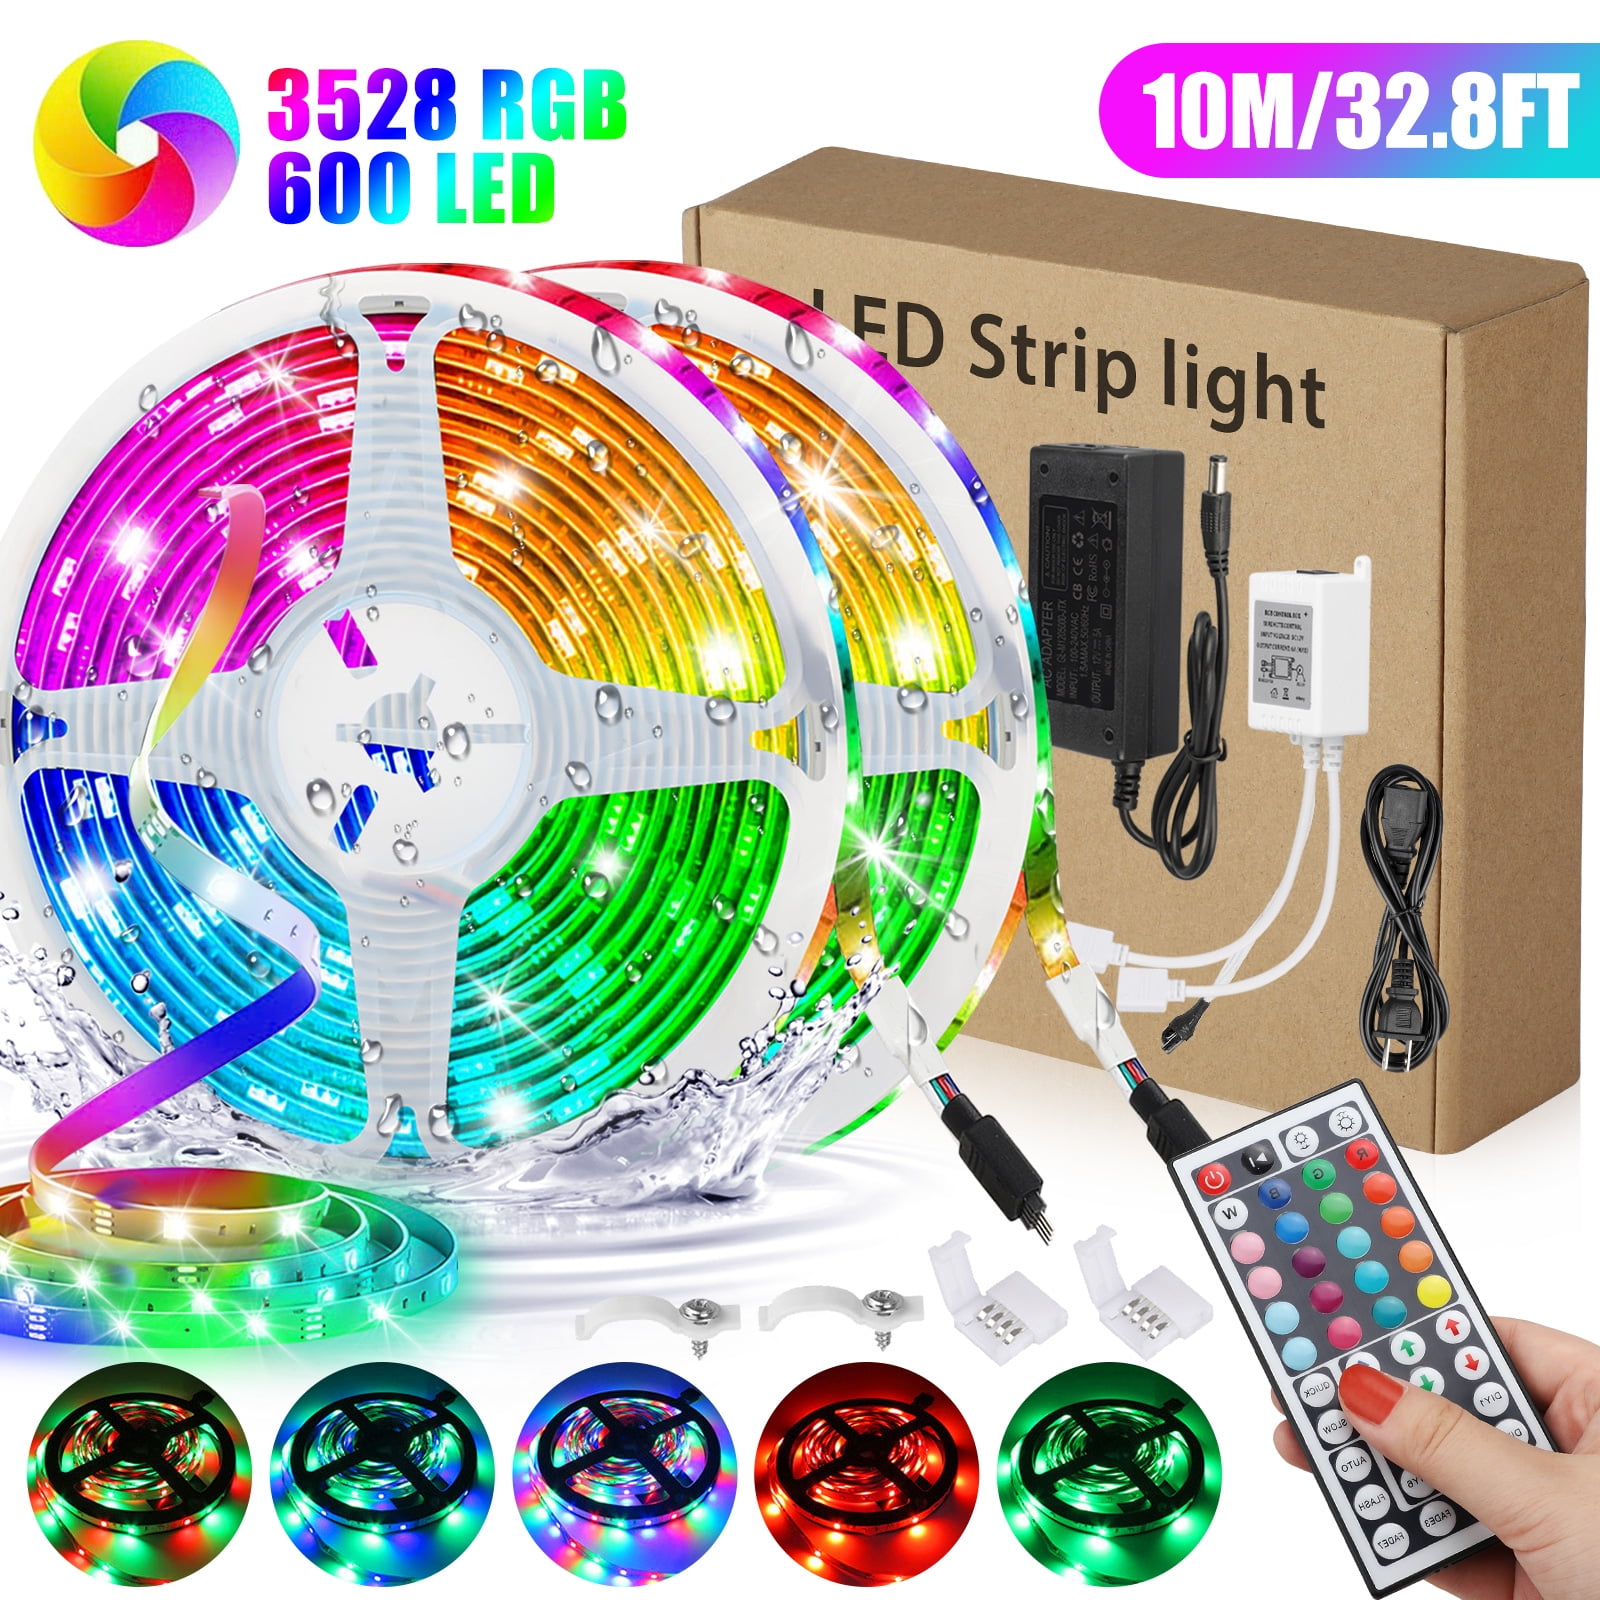 Details about   LED Strip Light Kitchen Under Cabinet Lighting TV Backlight RGB 5050 300LEDs/5m 